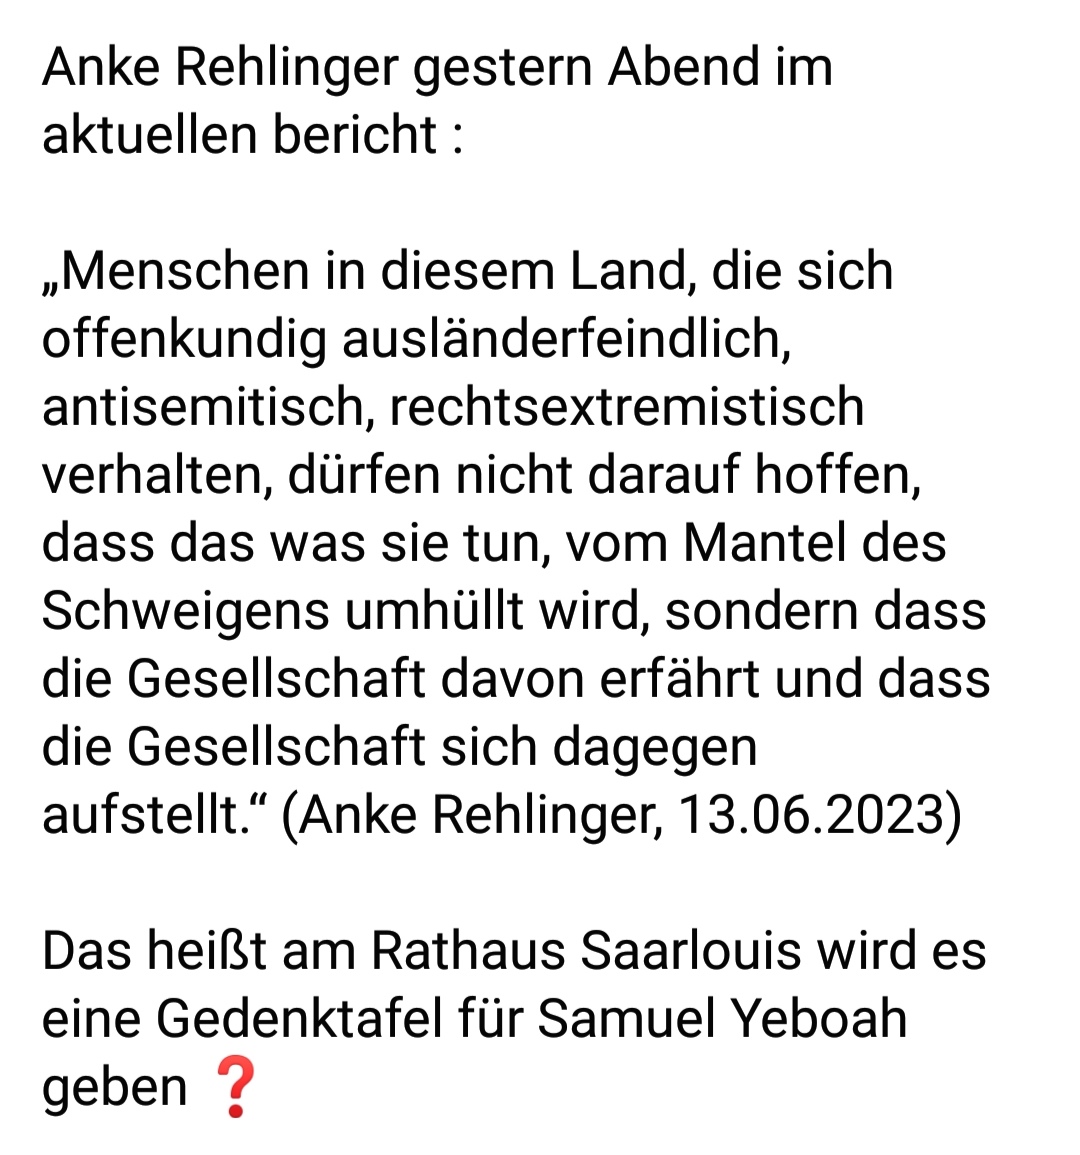 #SamuelYeboah
#AnkeRehlinger
#PeterDemmer
#Deutschland
#Saarland 
#Saarlouis
#Fraulautern
#RathausSaarlouis